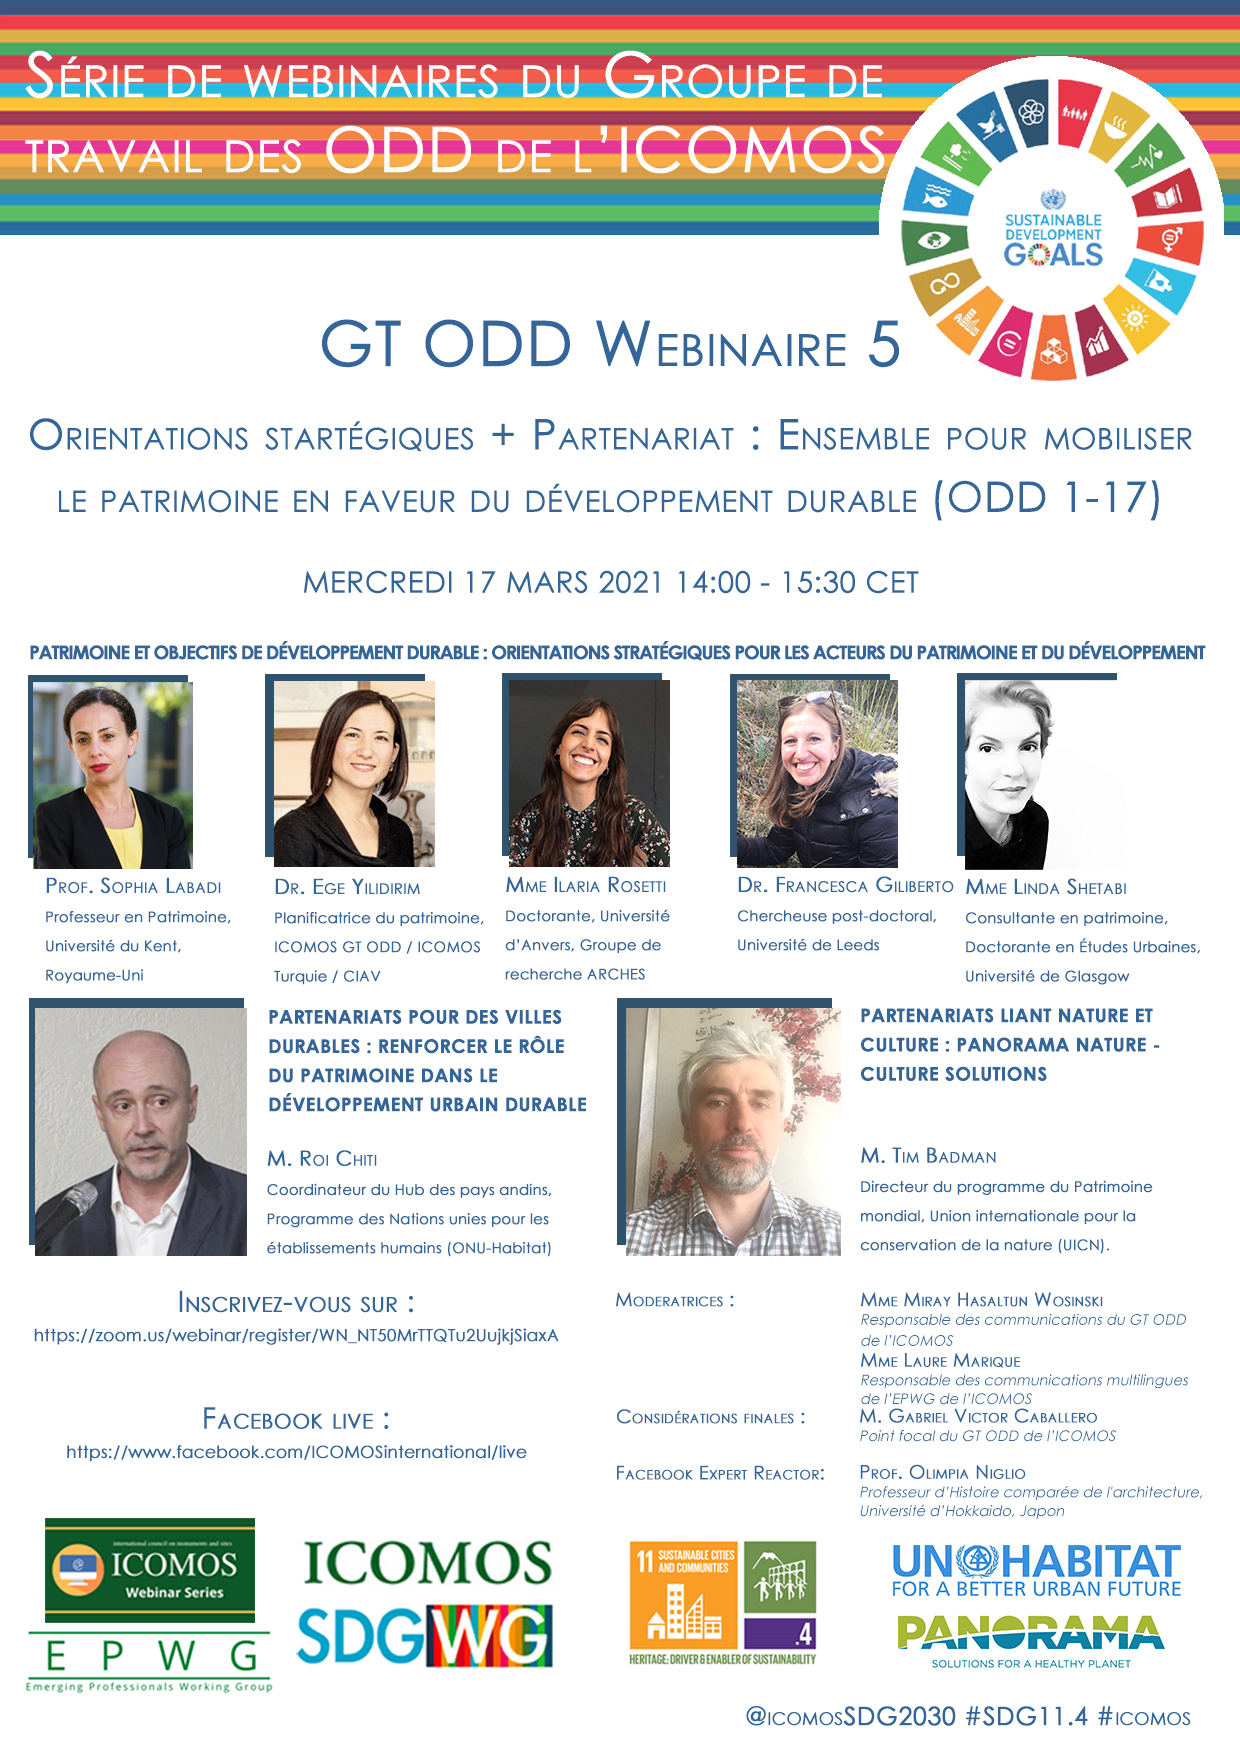 FR SDGWG webinar5 poster final